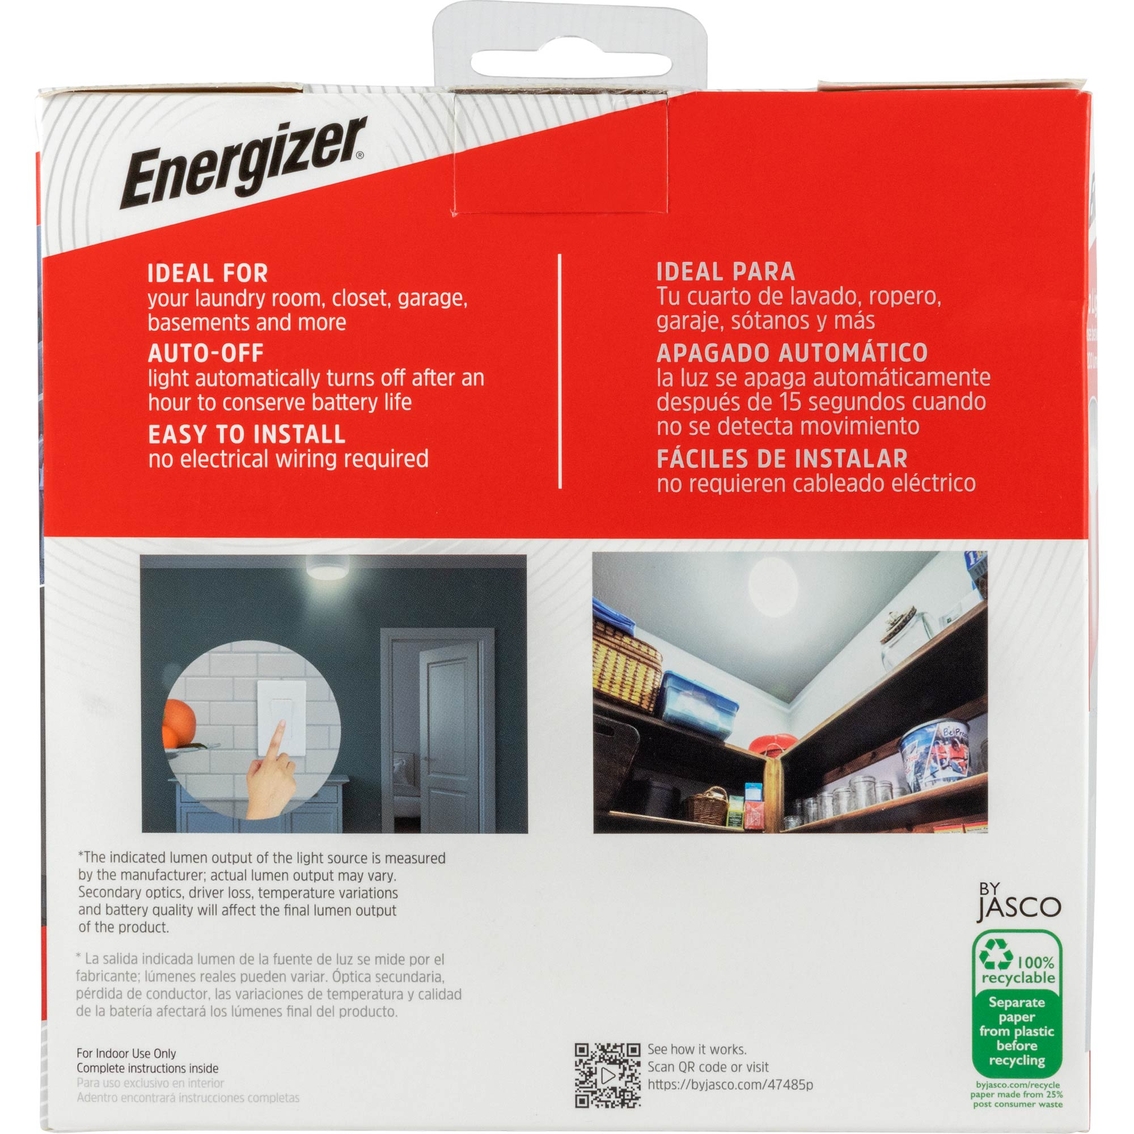 Energizer LED Ceiling Light. - Image 7 of 8